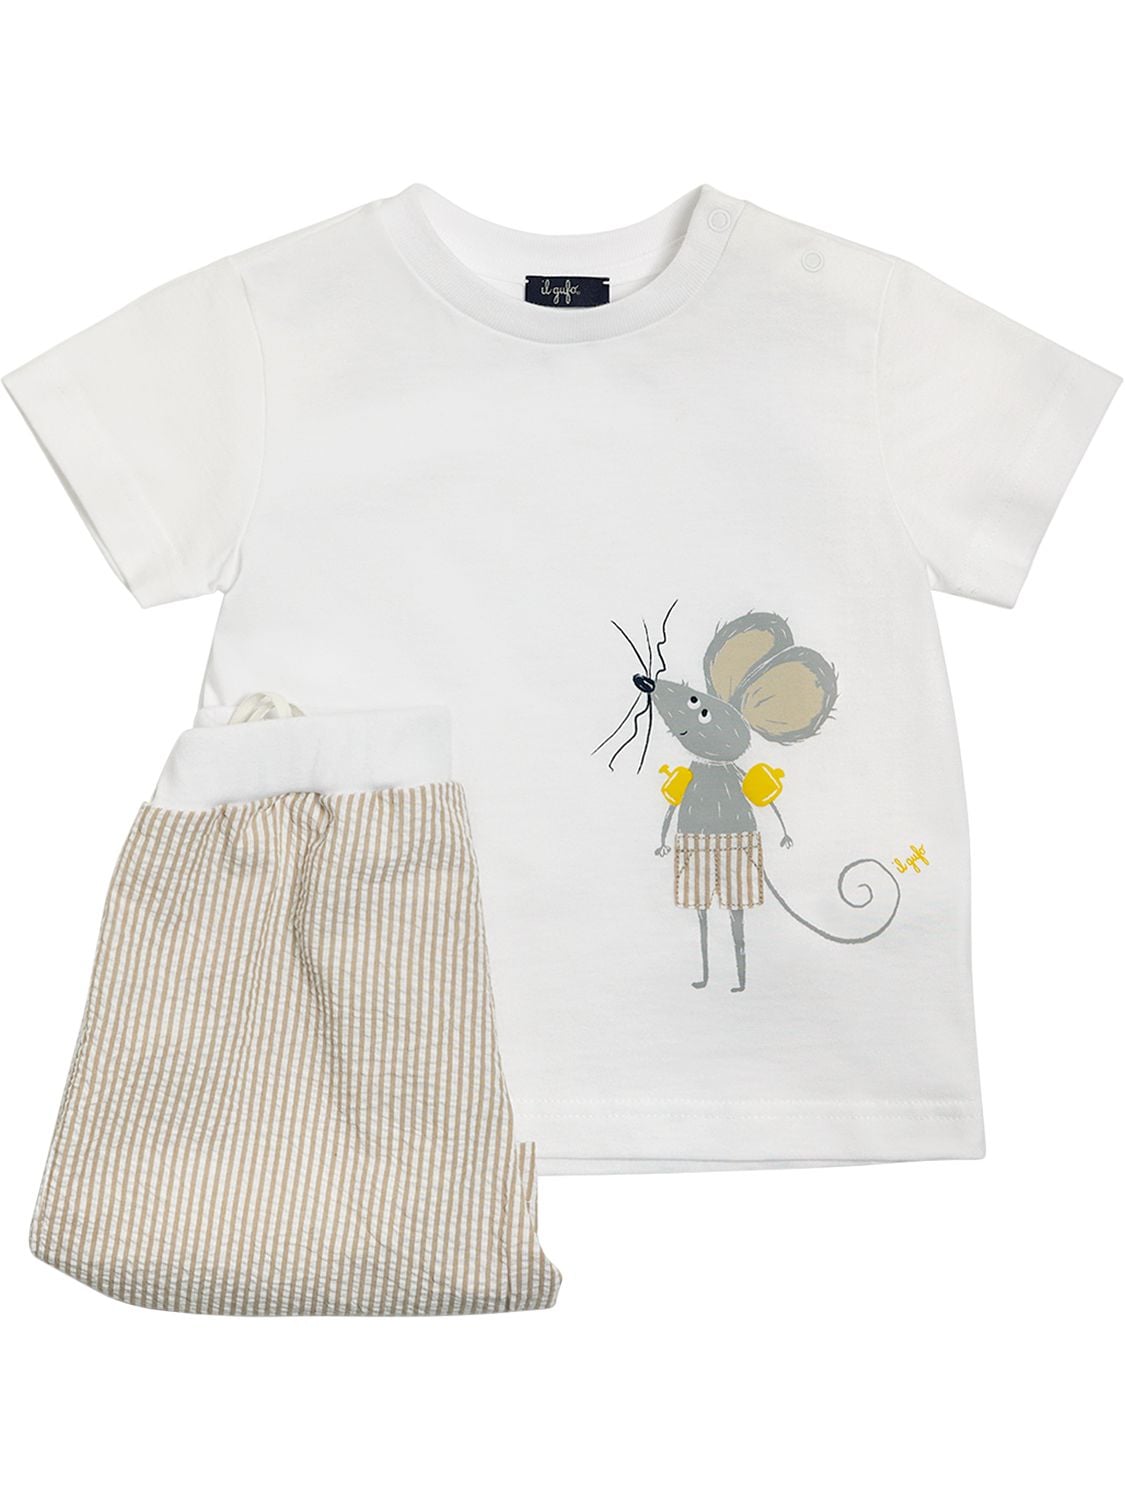 Il Gufo Kids' Cotton Jersey T-shirt & Seersucker Short In White,beige